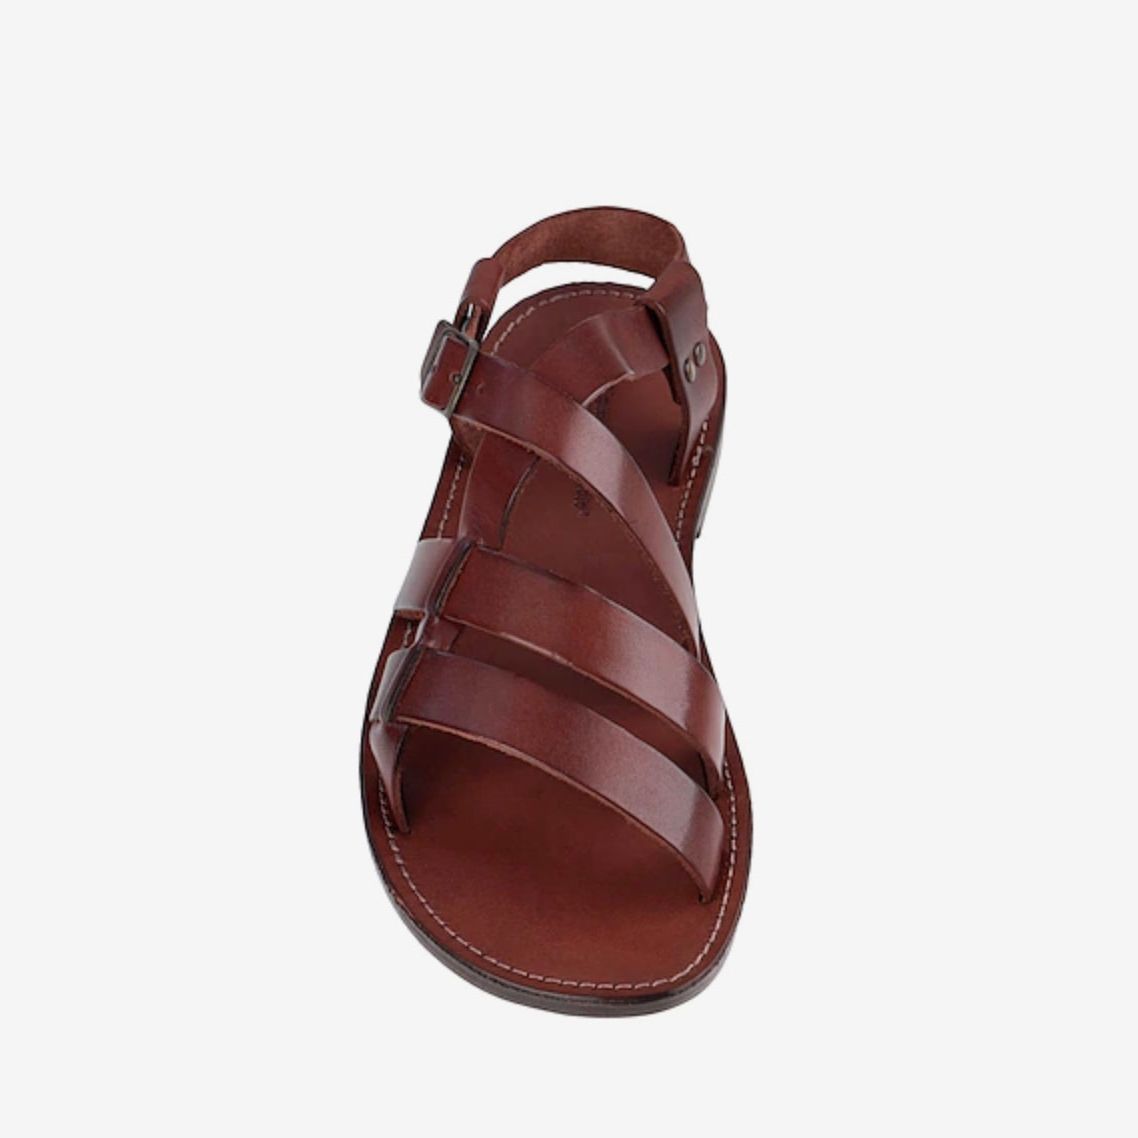 sandals for men 2020